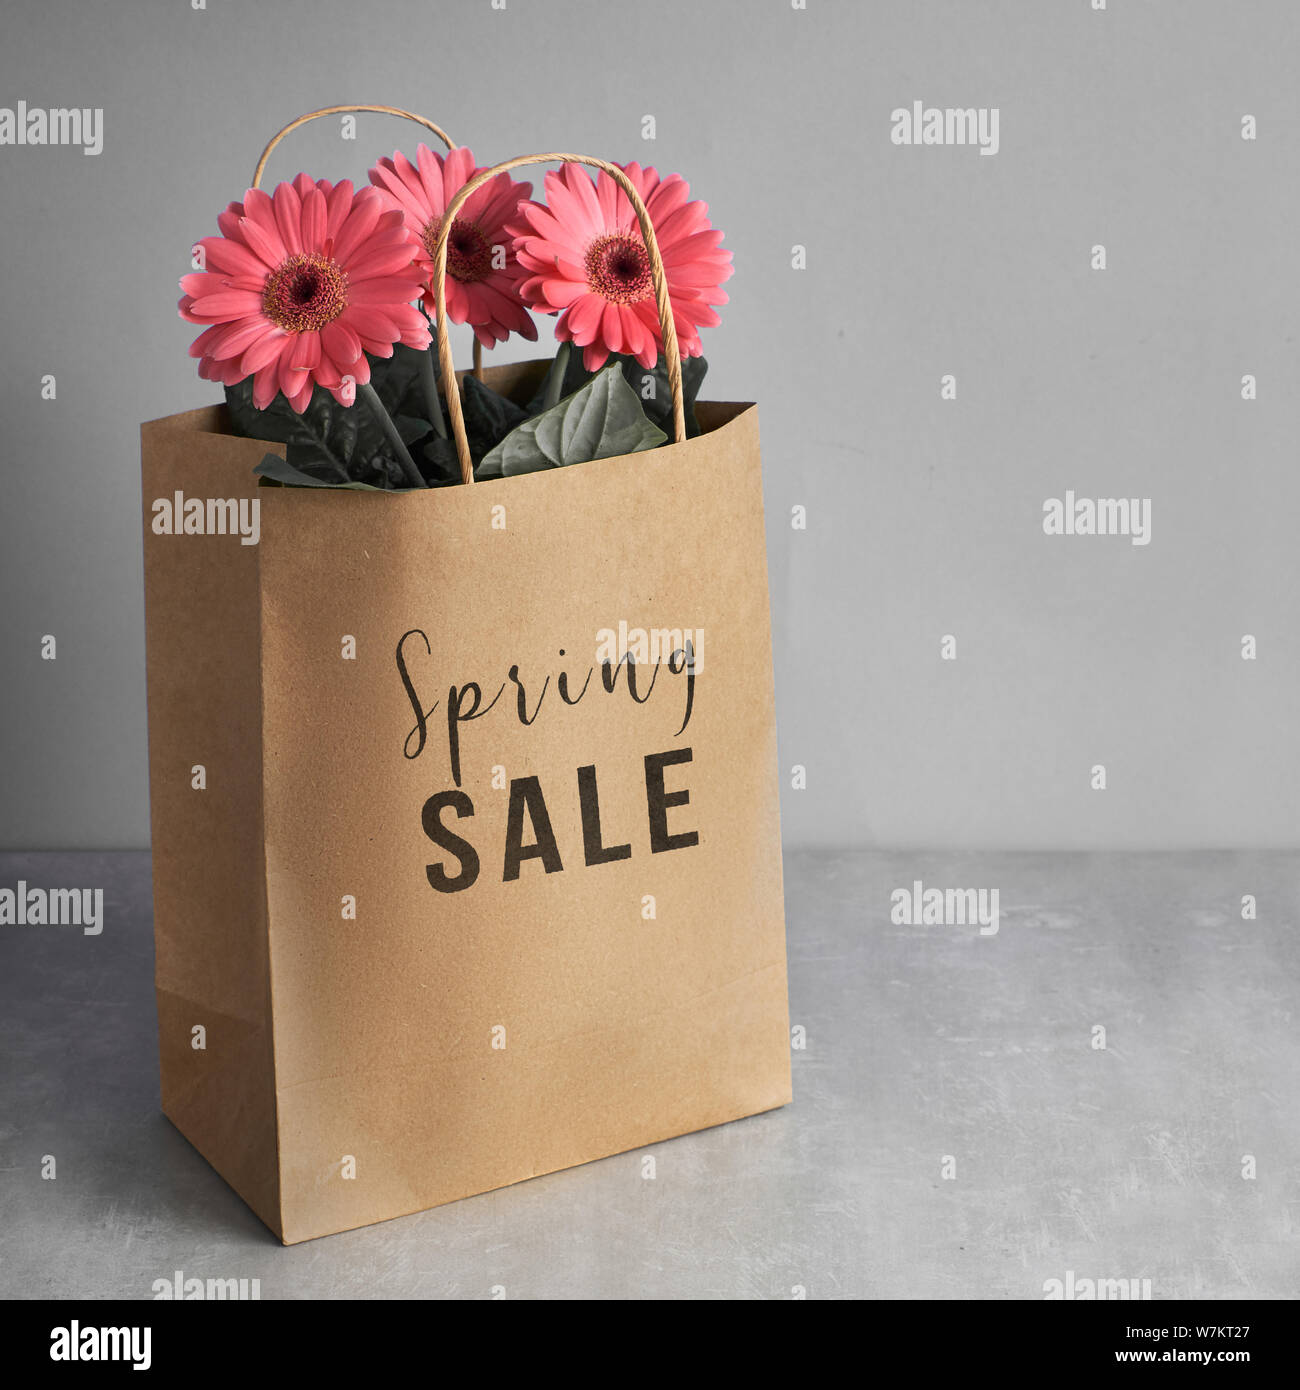 Gerbera fleurs corail daisy et d'artisanat sacs papper sur fond de papier vert, carré, la composition de l'image concept vente de printemps avec texte 'Spr Banque D'Images